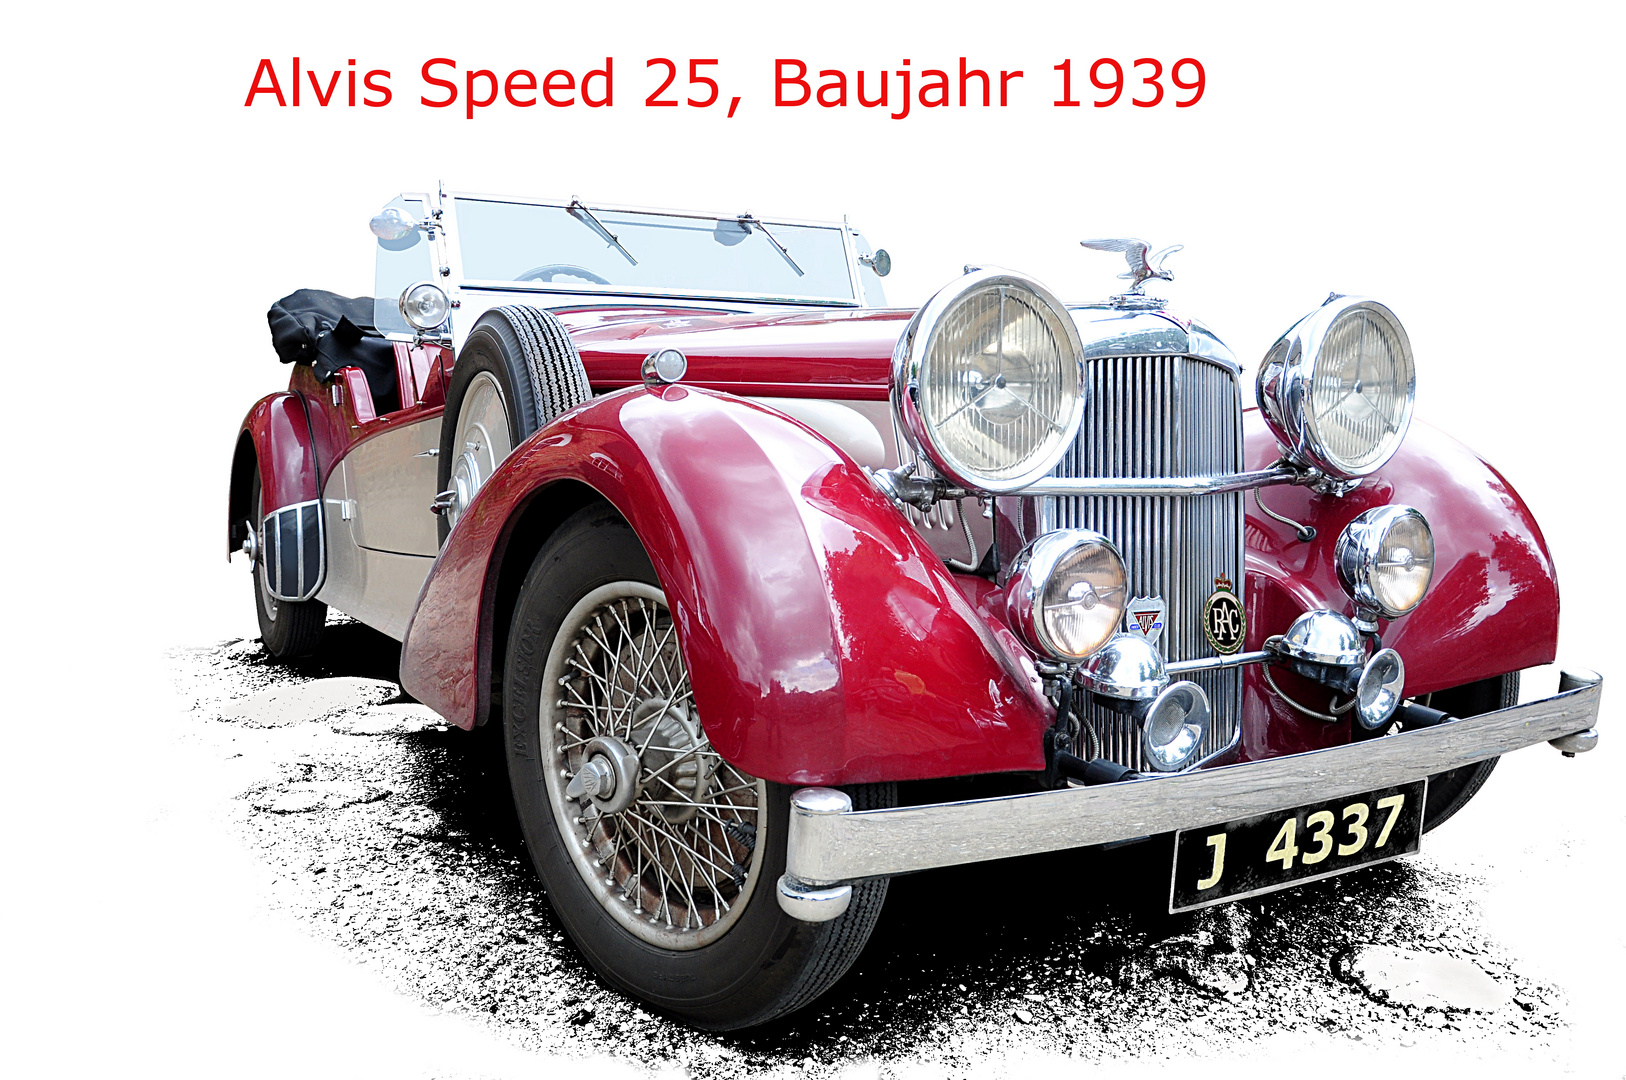 Alvis Speed 25